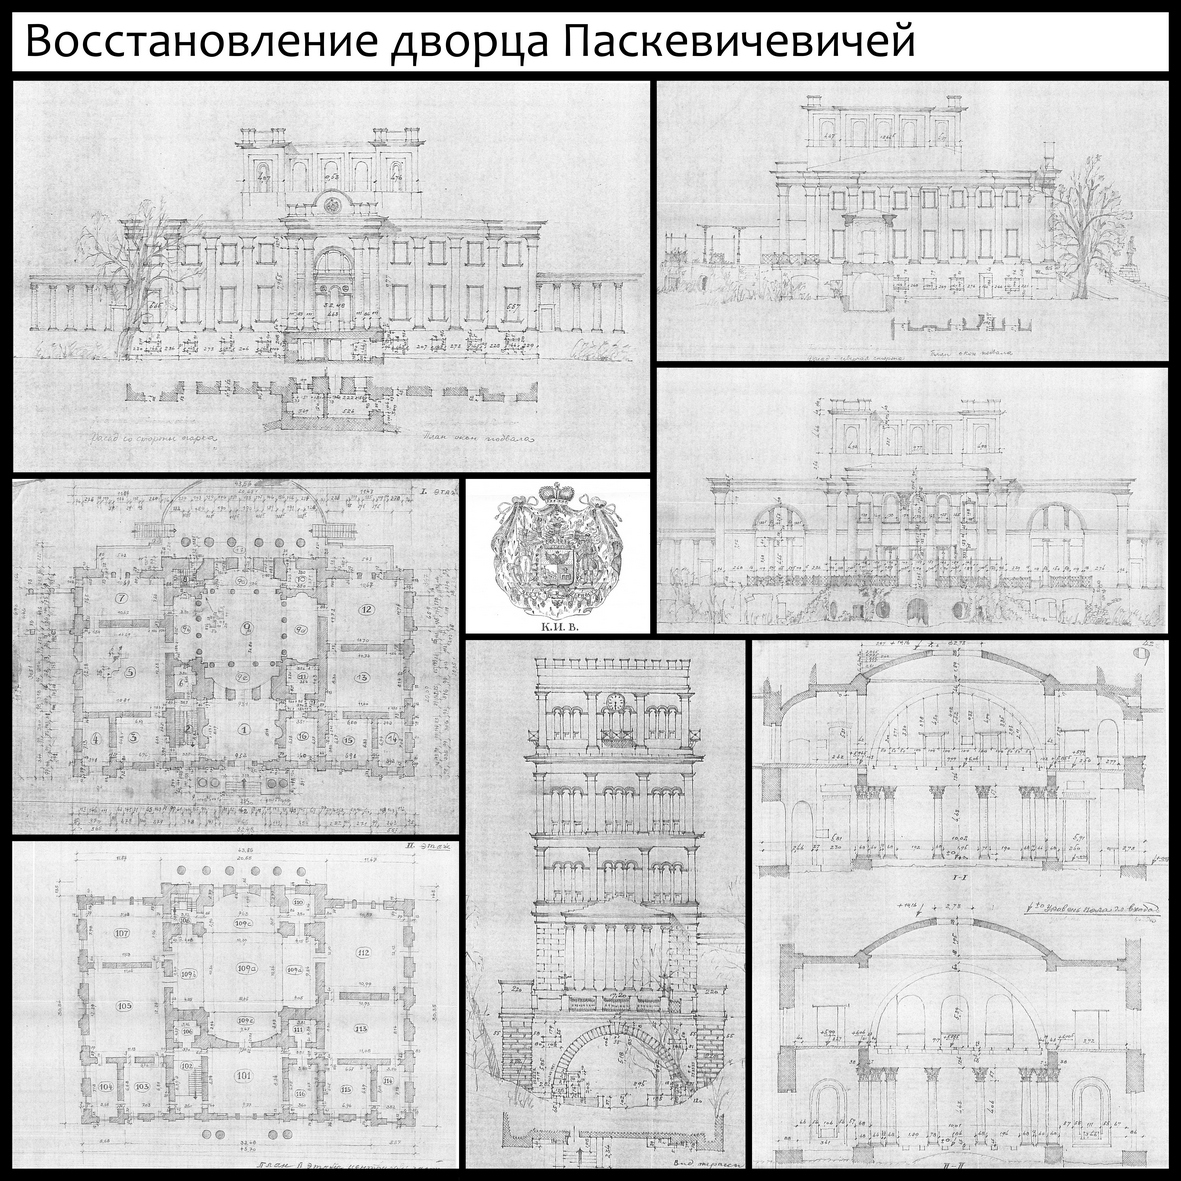 Відповідальною і важливою роботою для колективу є розробка проекту відбудови палацу Румянцевих-Паскевичей